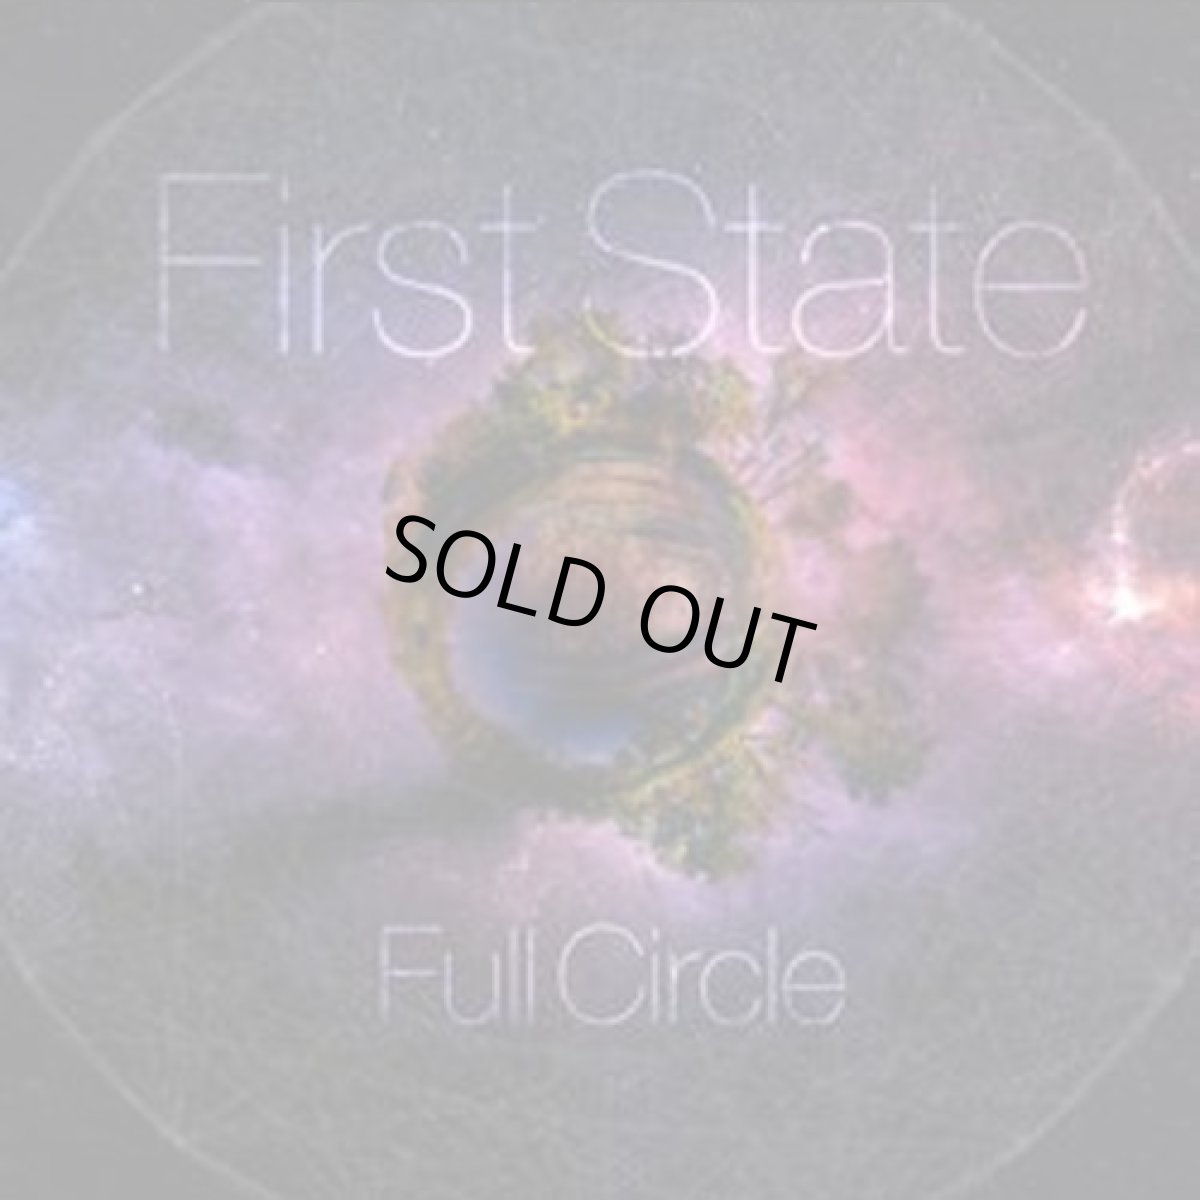 画像1: CD「FIRST STATE / Full Circle」【EDM・トランス】 (1)